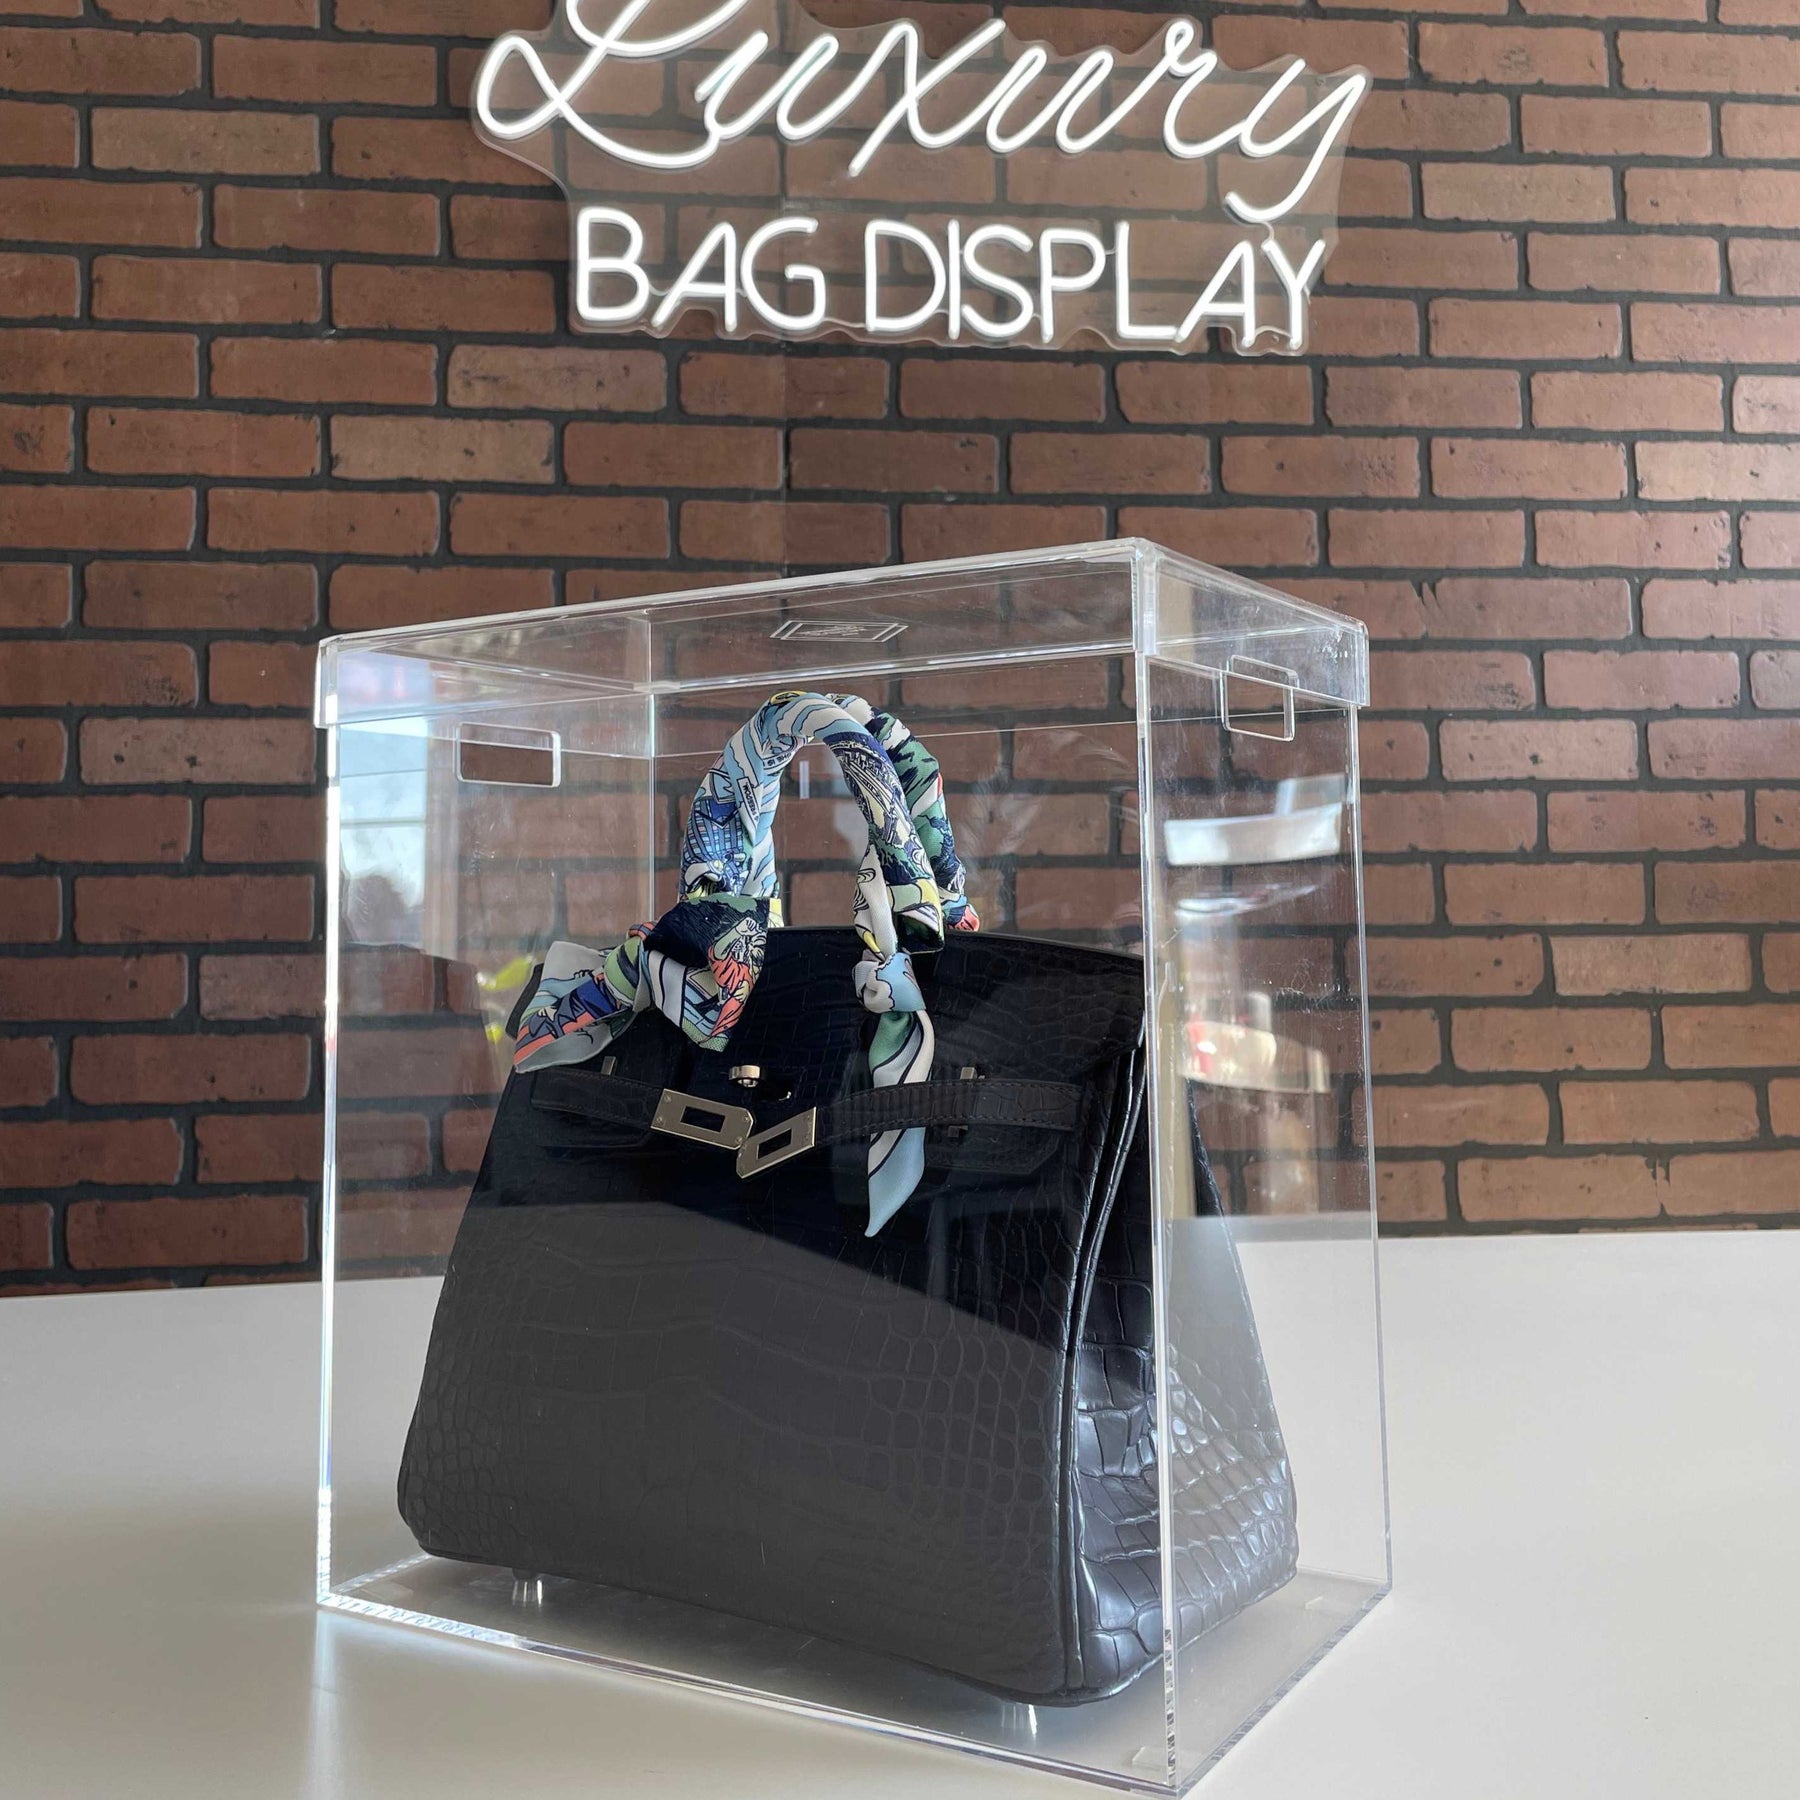 B2.5 Display Case – Luxury Bag Display